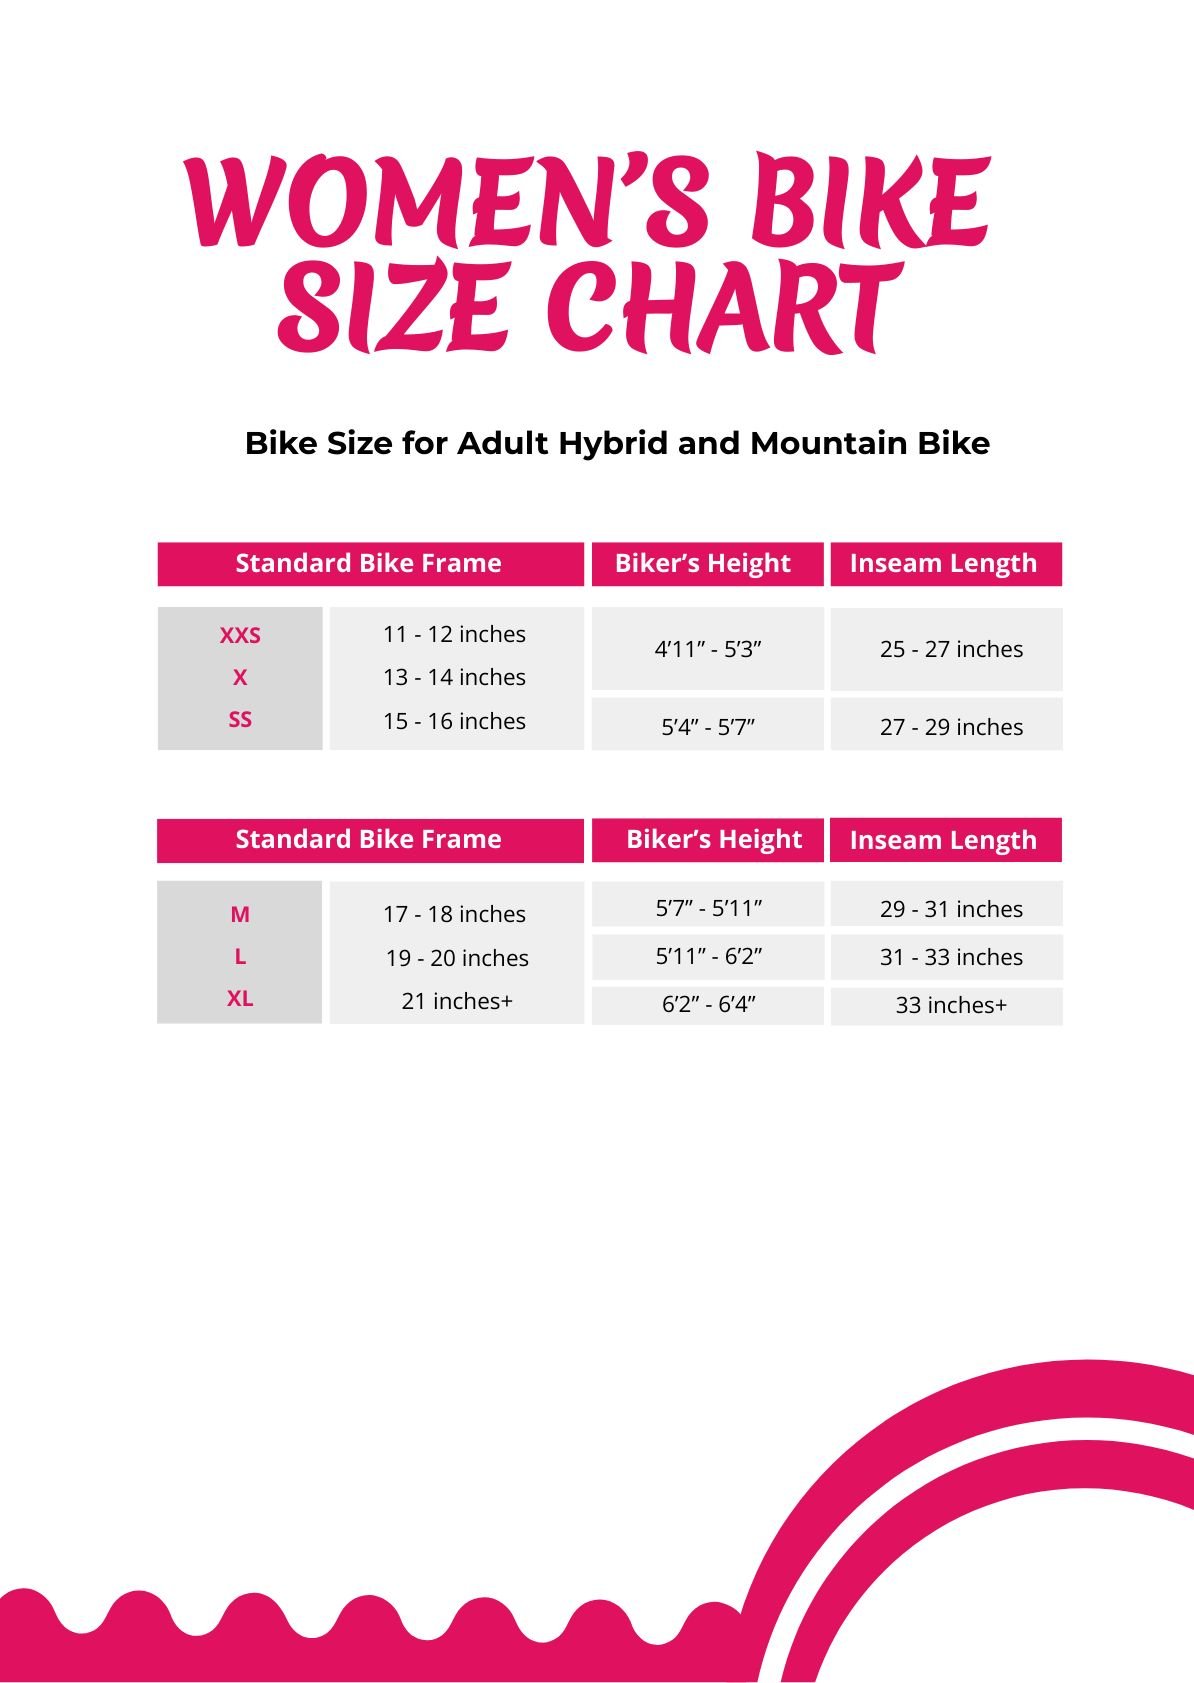 Women's Bike Size Chart in PDF